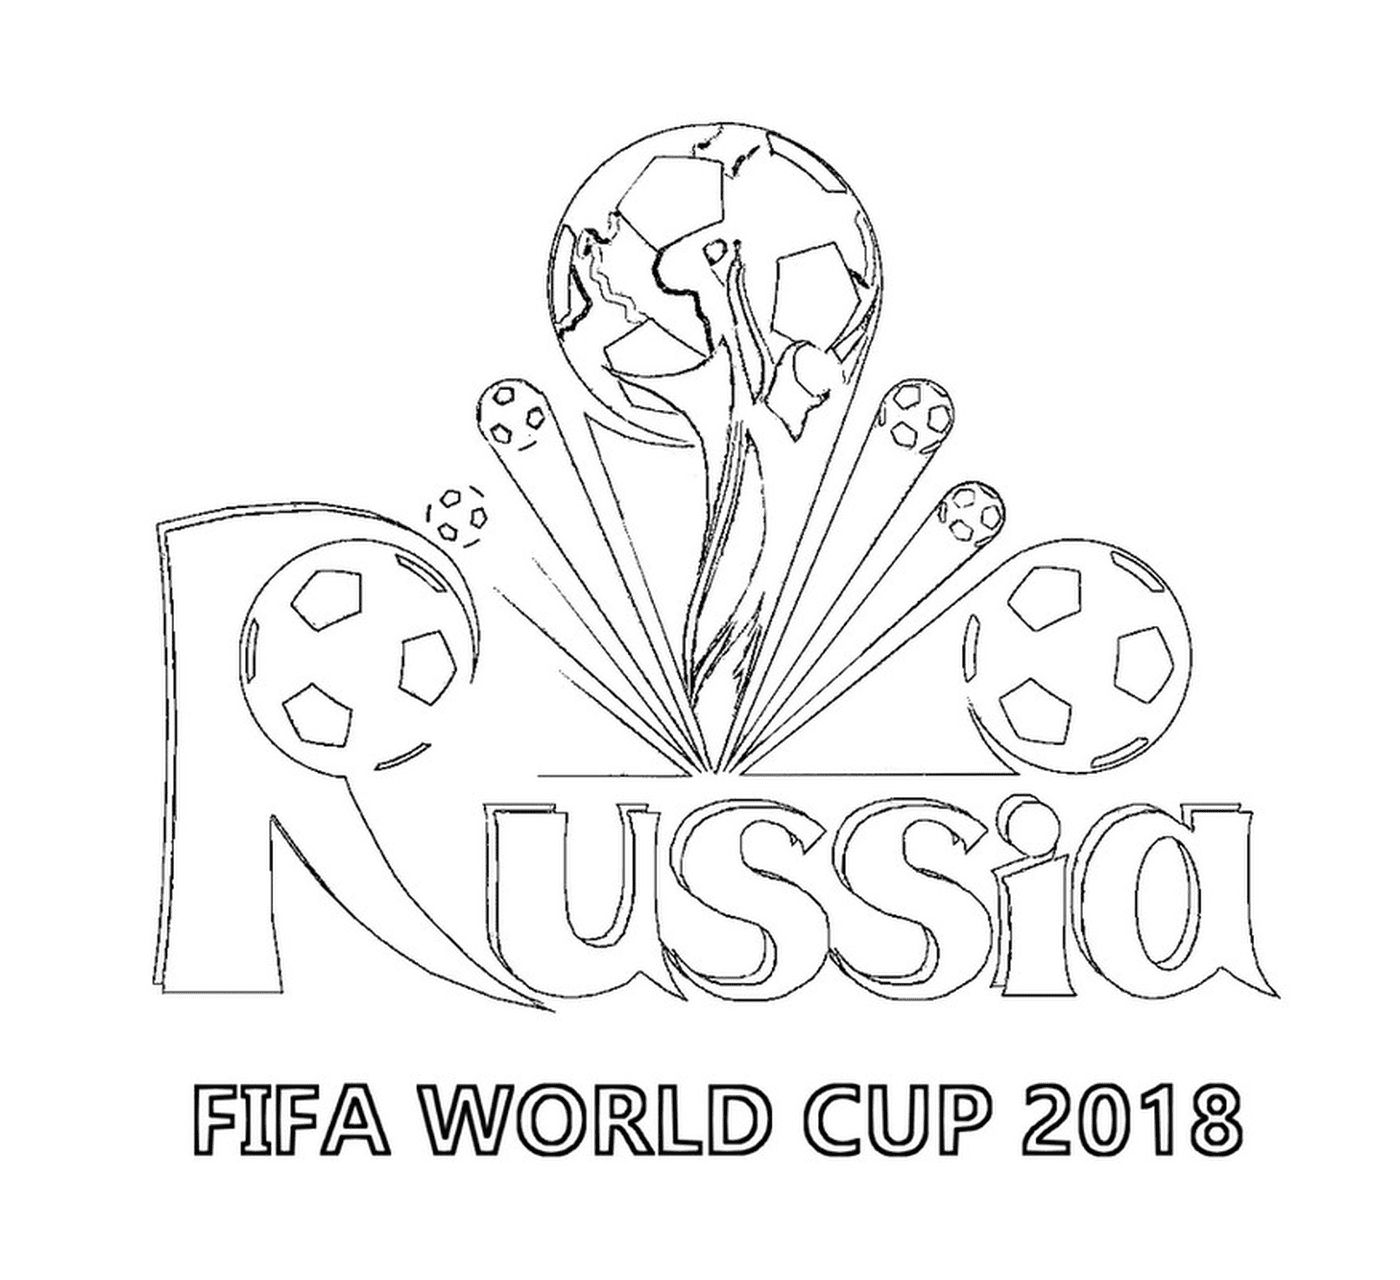  Copa Mundial de la FIFA 2018, logo 